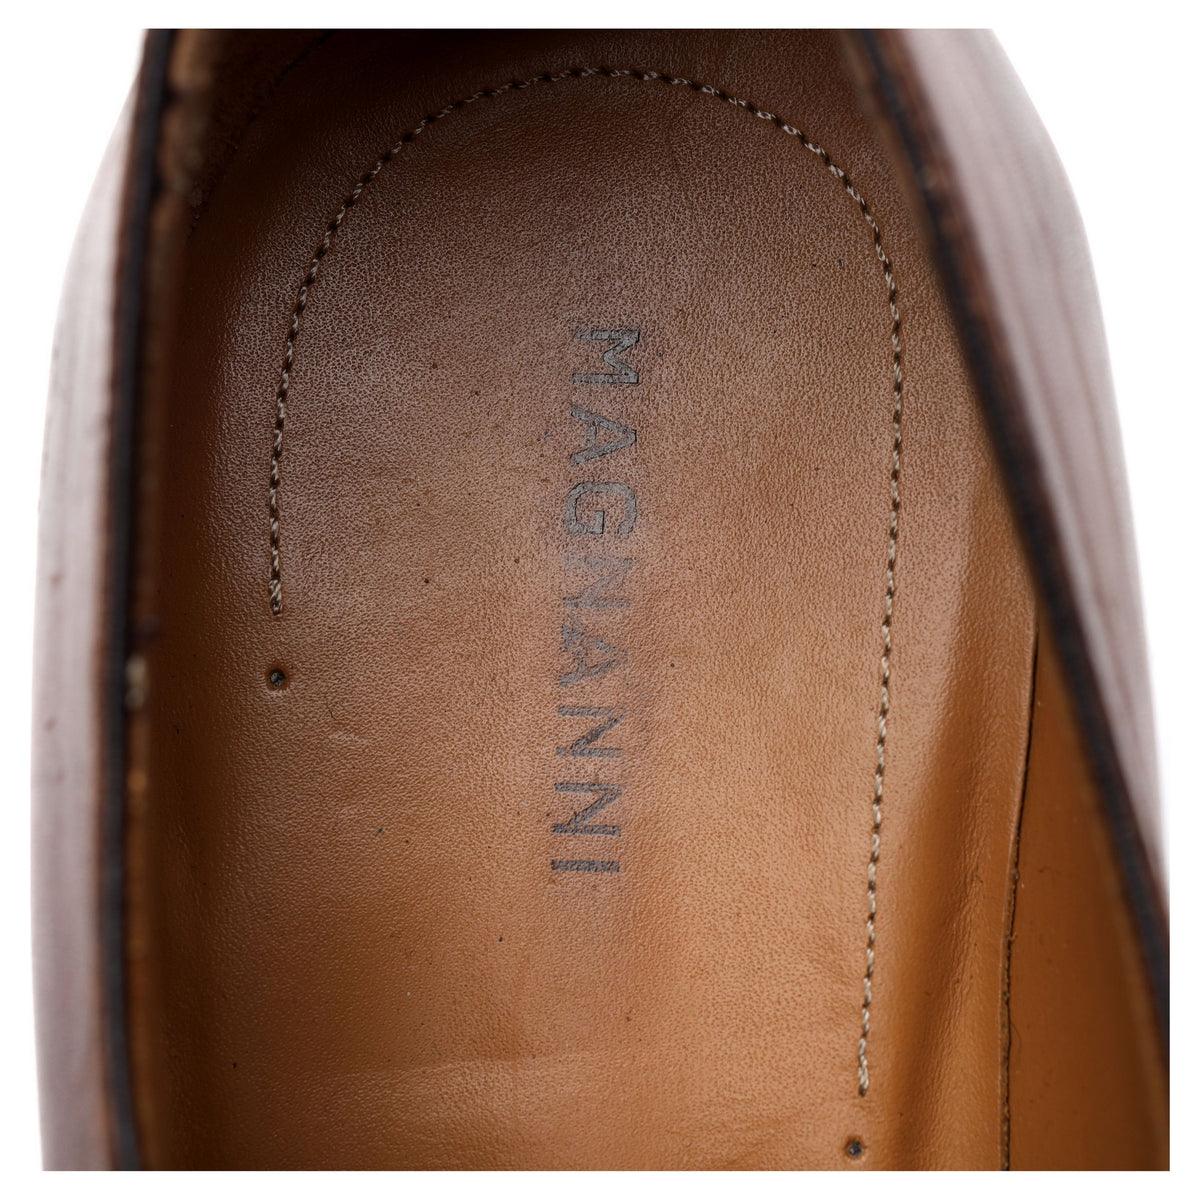 Tan Brown Leather Wholecut Oxford UK 6 EU 40